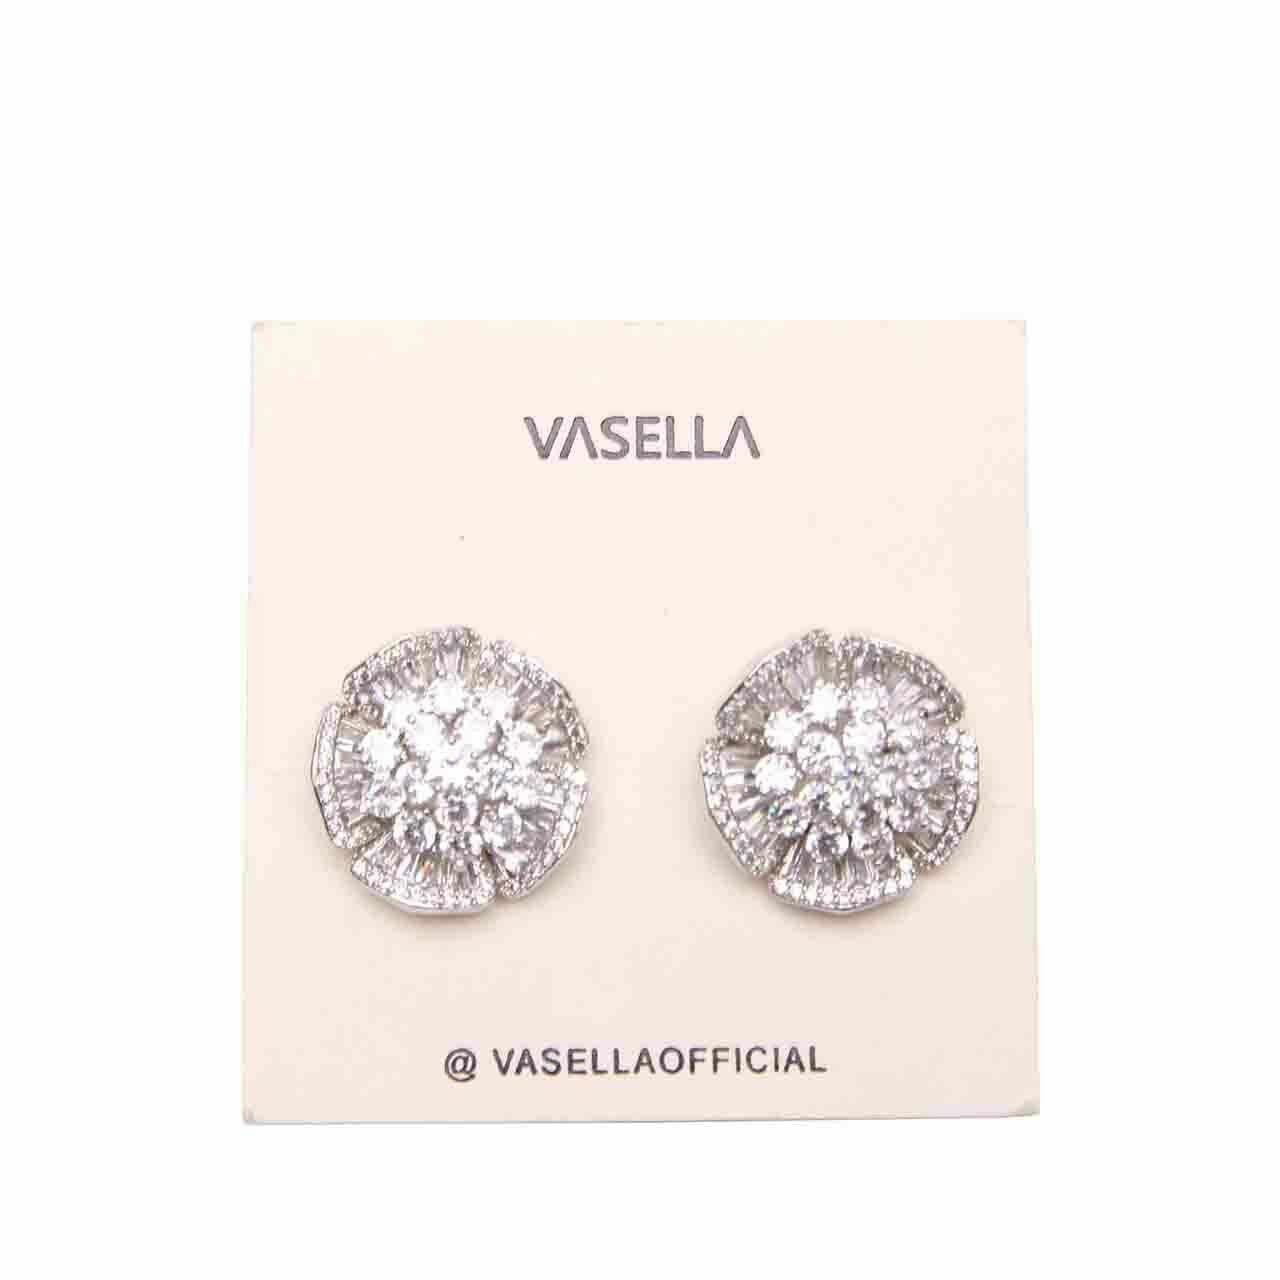 Vasella Silver Earrings Jewelry